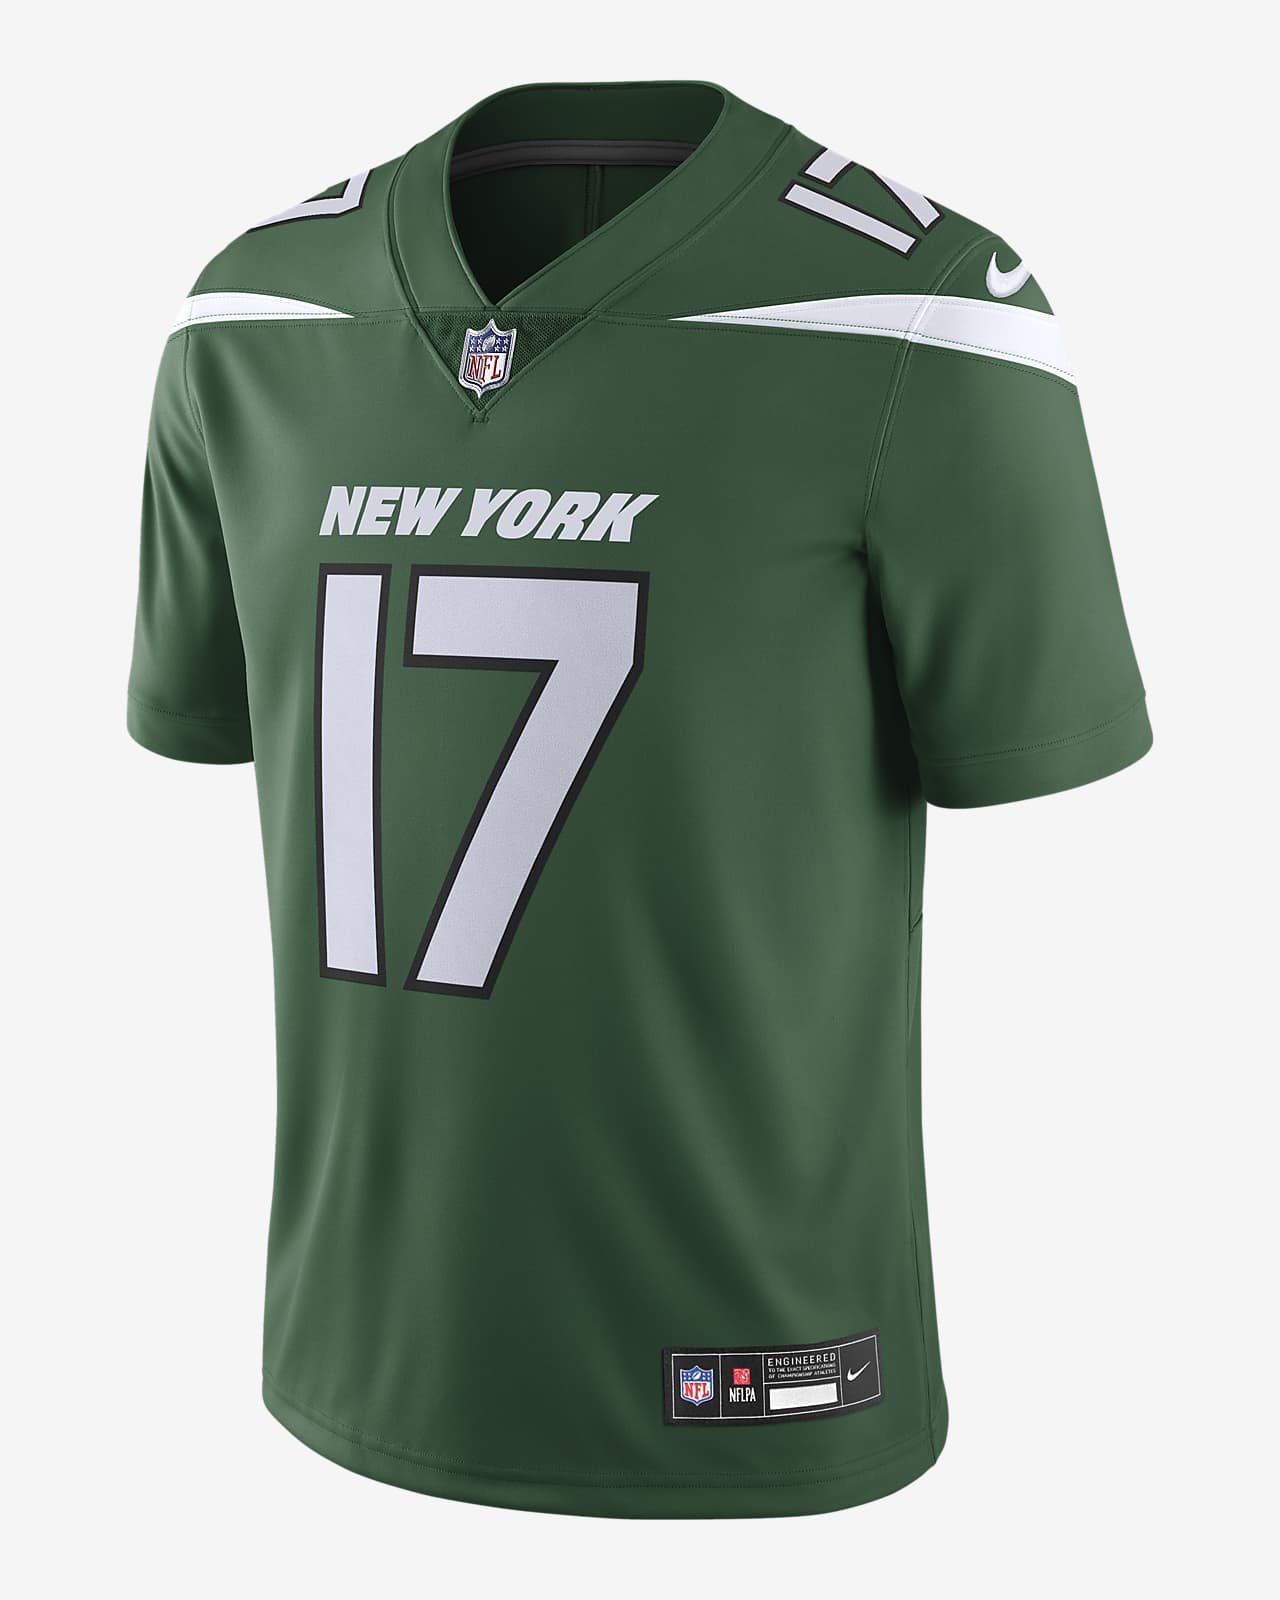 Garrett Wilson New York Jets Men's Nike Dri-FIT NFL Limited Jersey